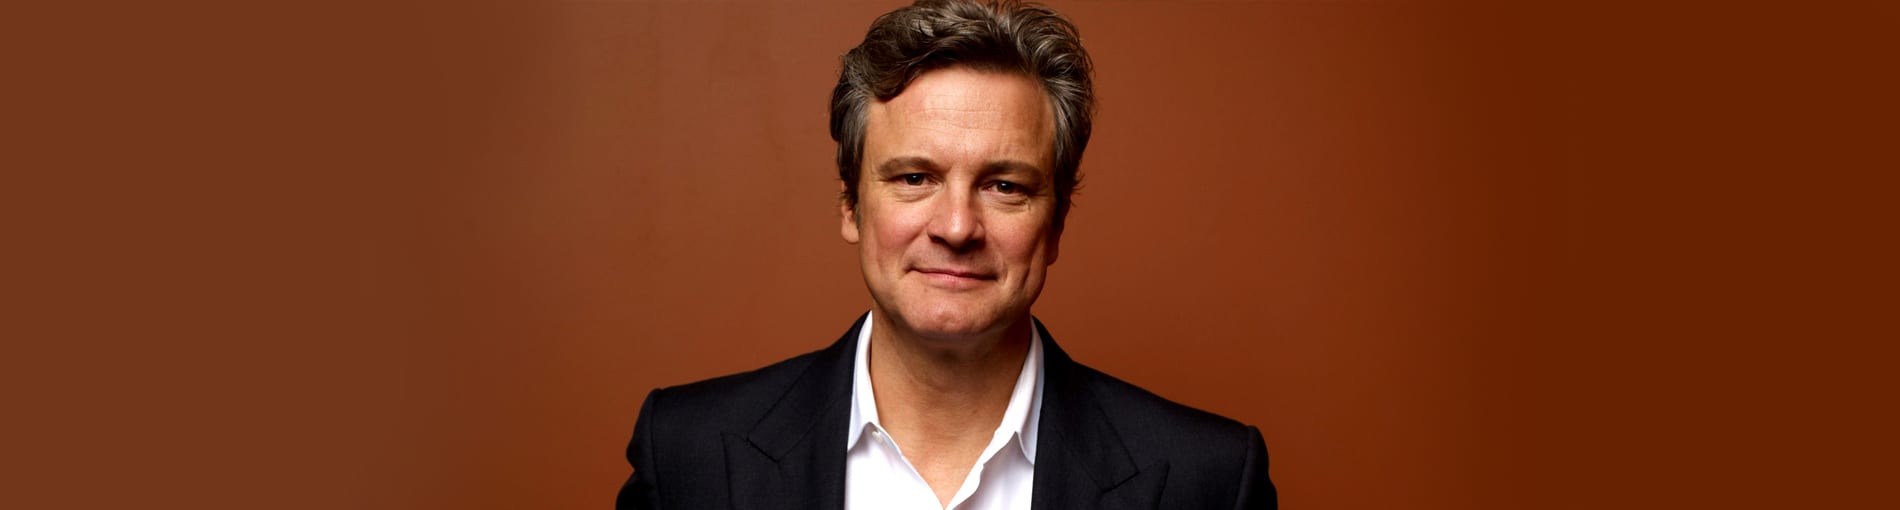 ¿Quién es Colin Firth? Te contamos 6 cosas que no sabías sobre él.